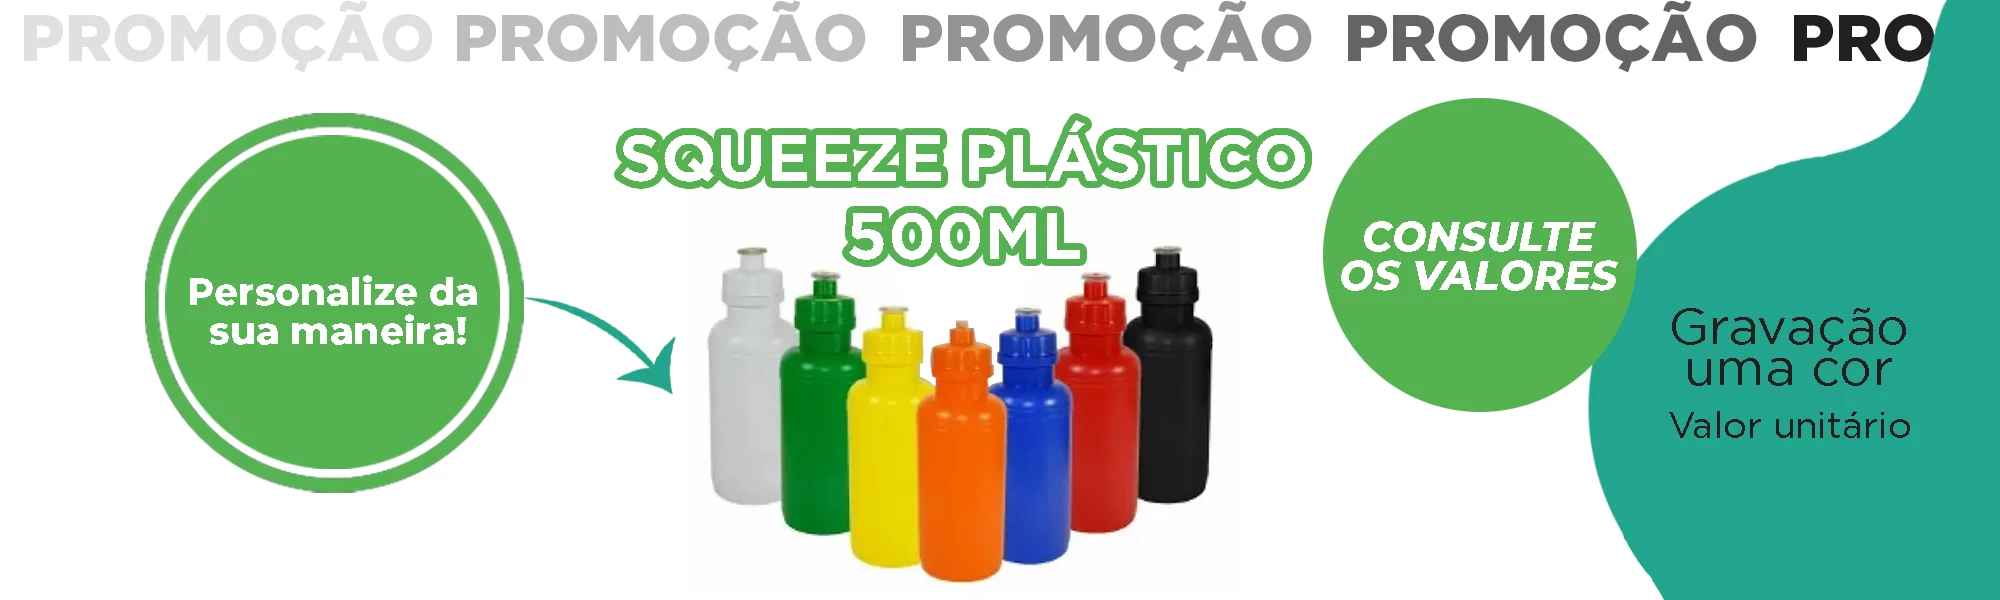 Promoção squeeze plástico